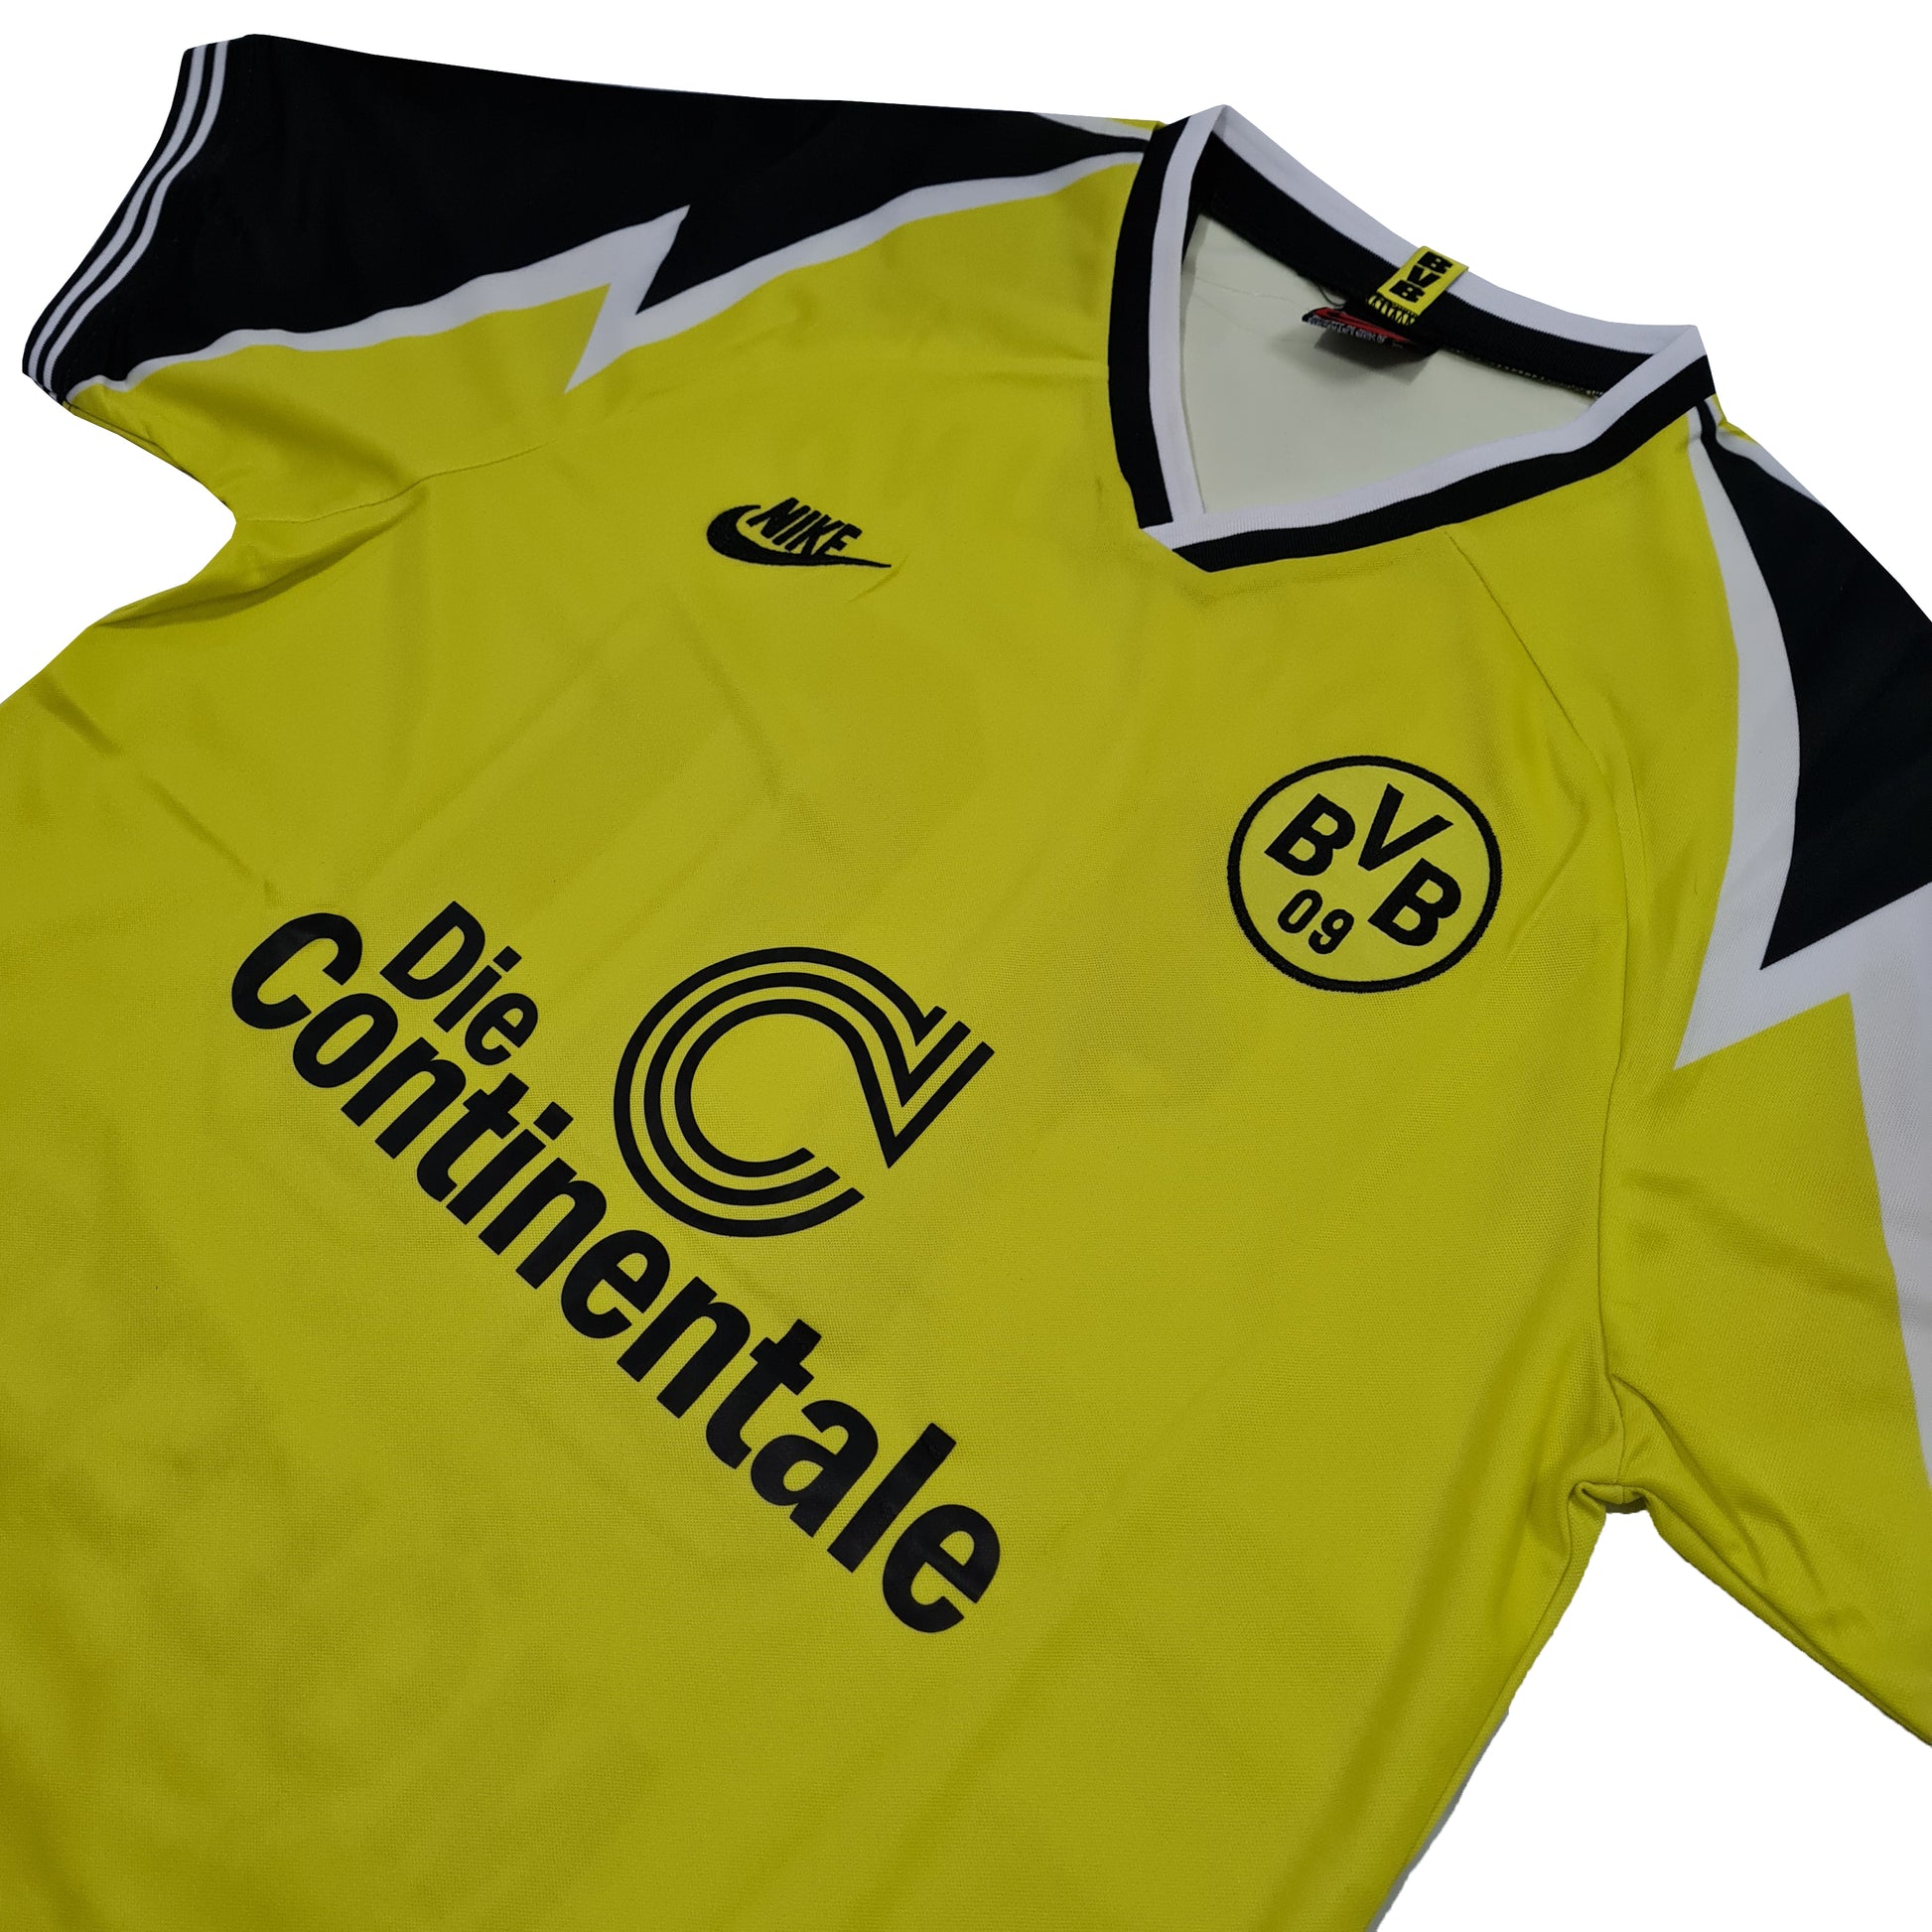 Borussia Dortmund Titular 1995/96 - Möller - Thunder Internacional